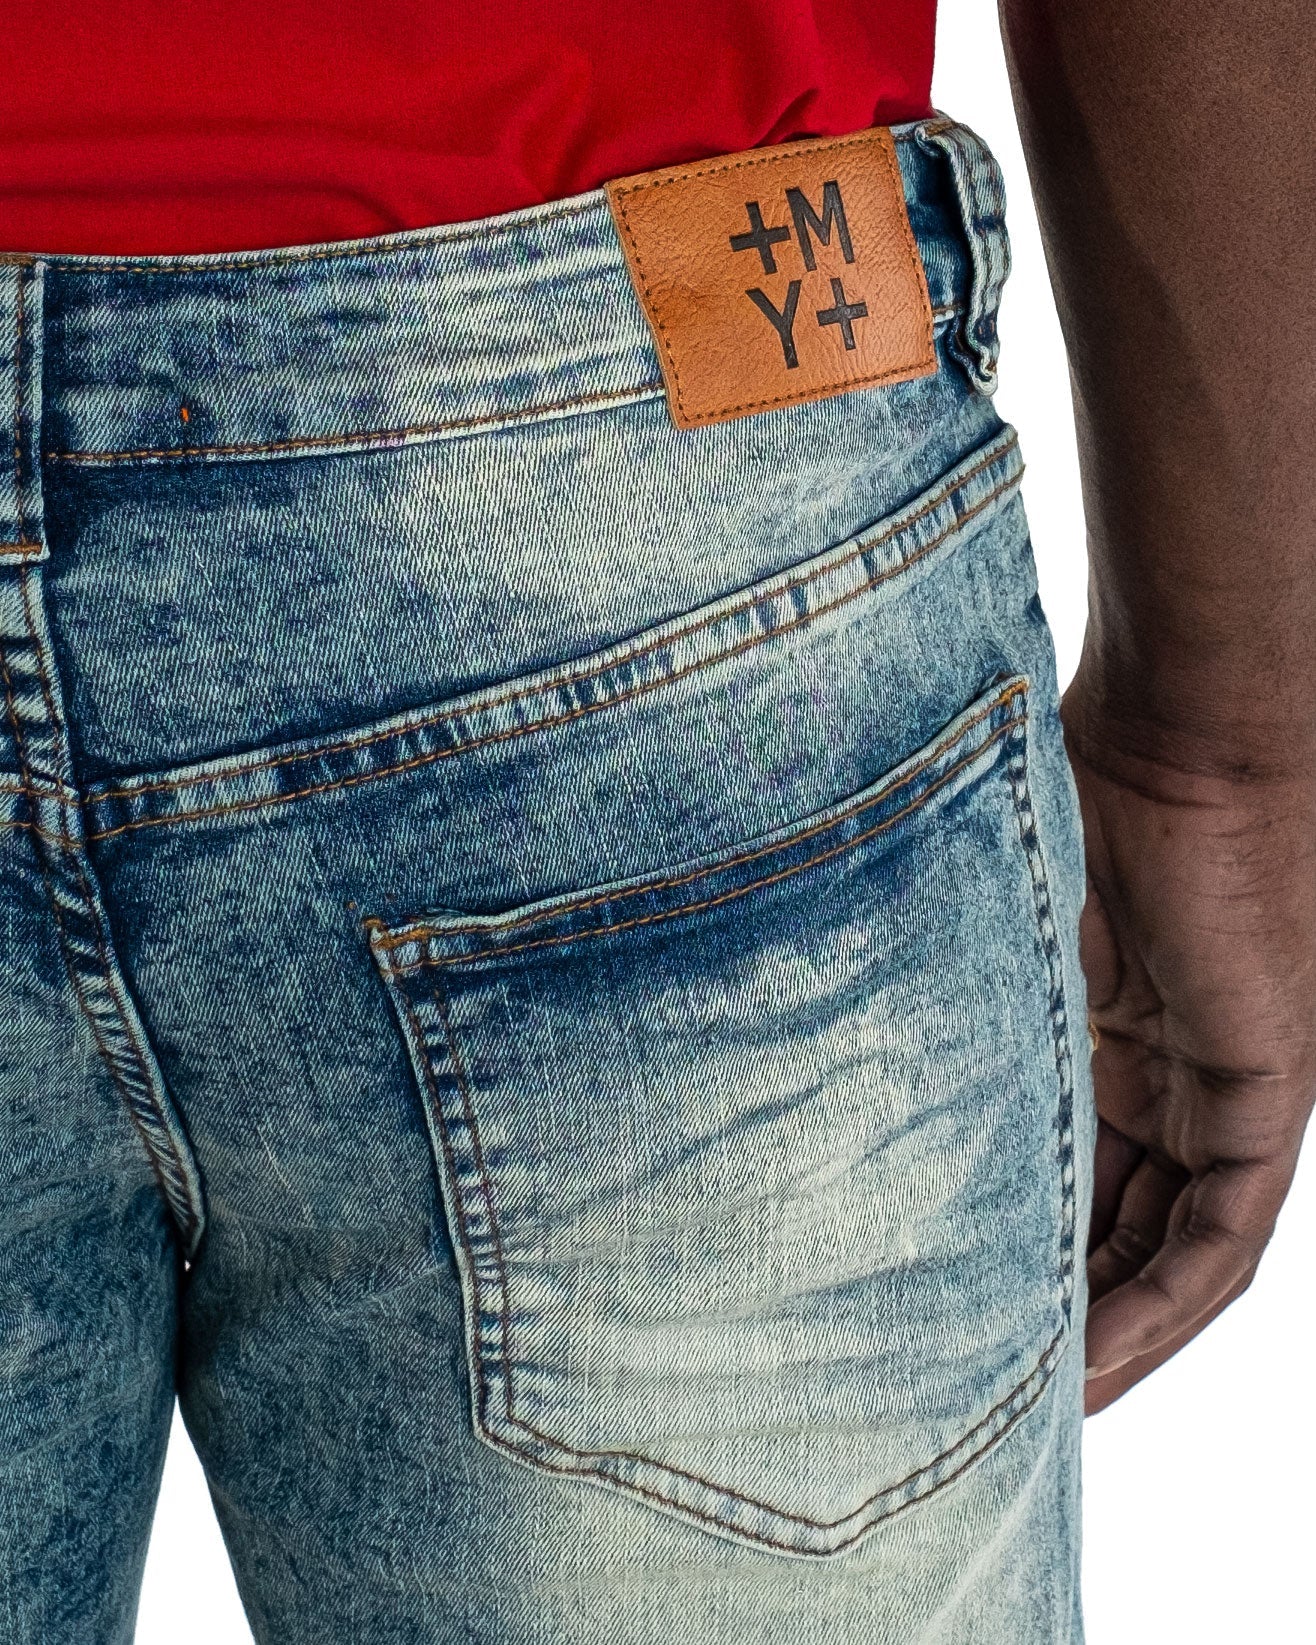 QUINCY | Men's Slim Straight Distressed Rip & Repair Denim Jeans in Vintage Blue Acid Wash